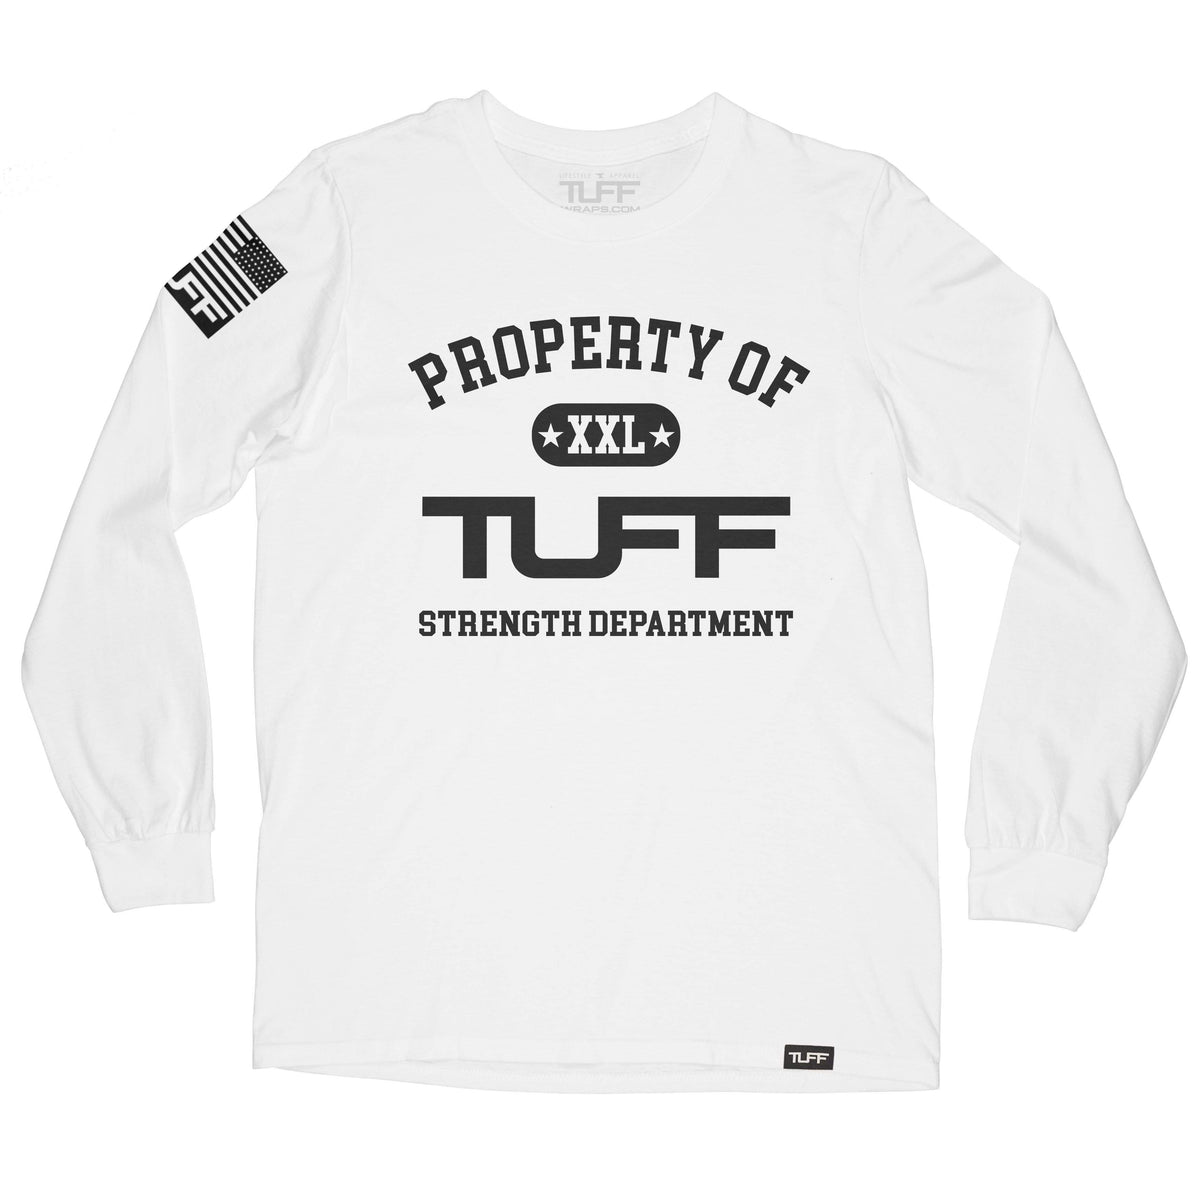 Property of TUFF Long Sleeve Tee TuffWraps.com